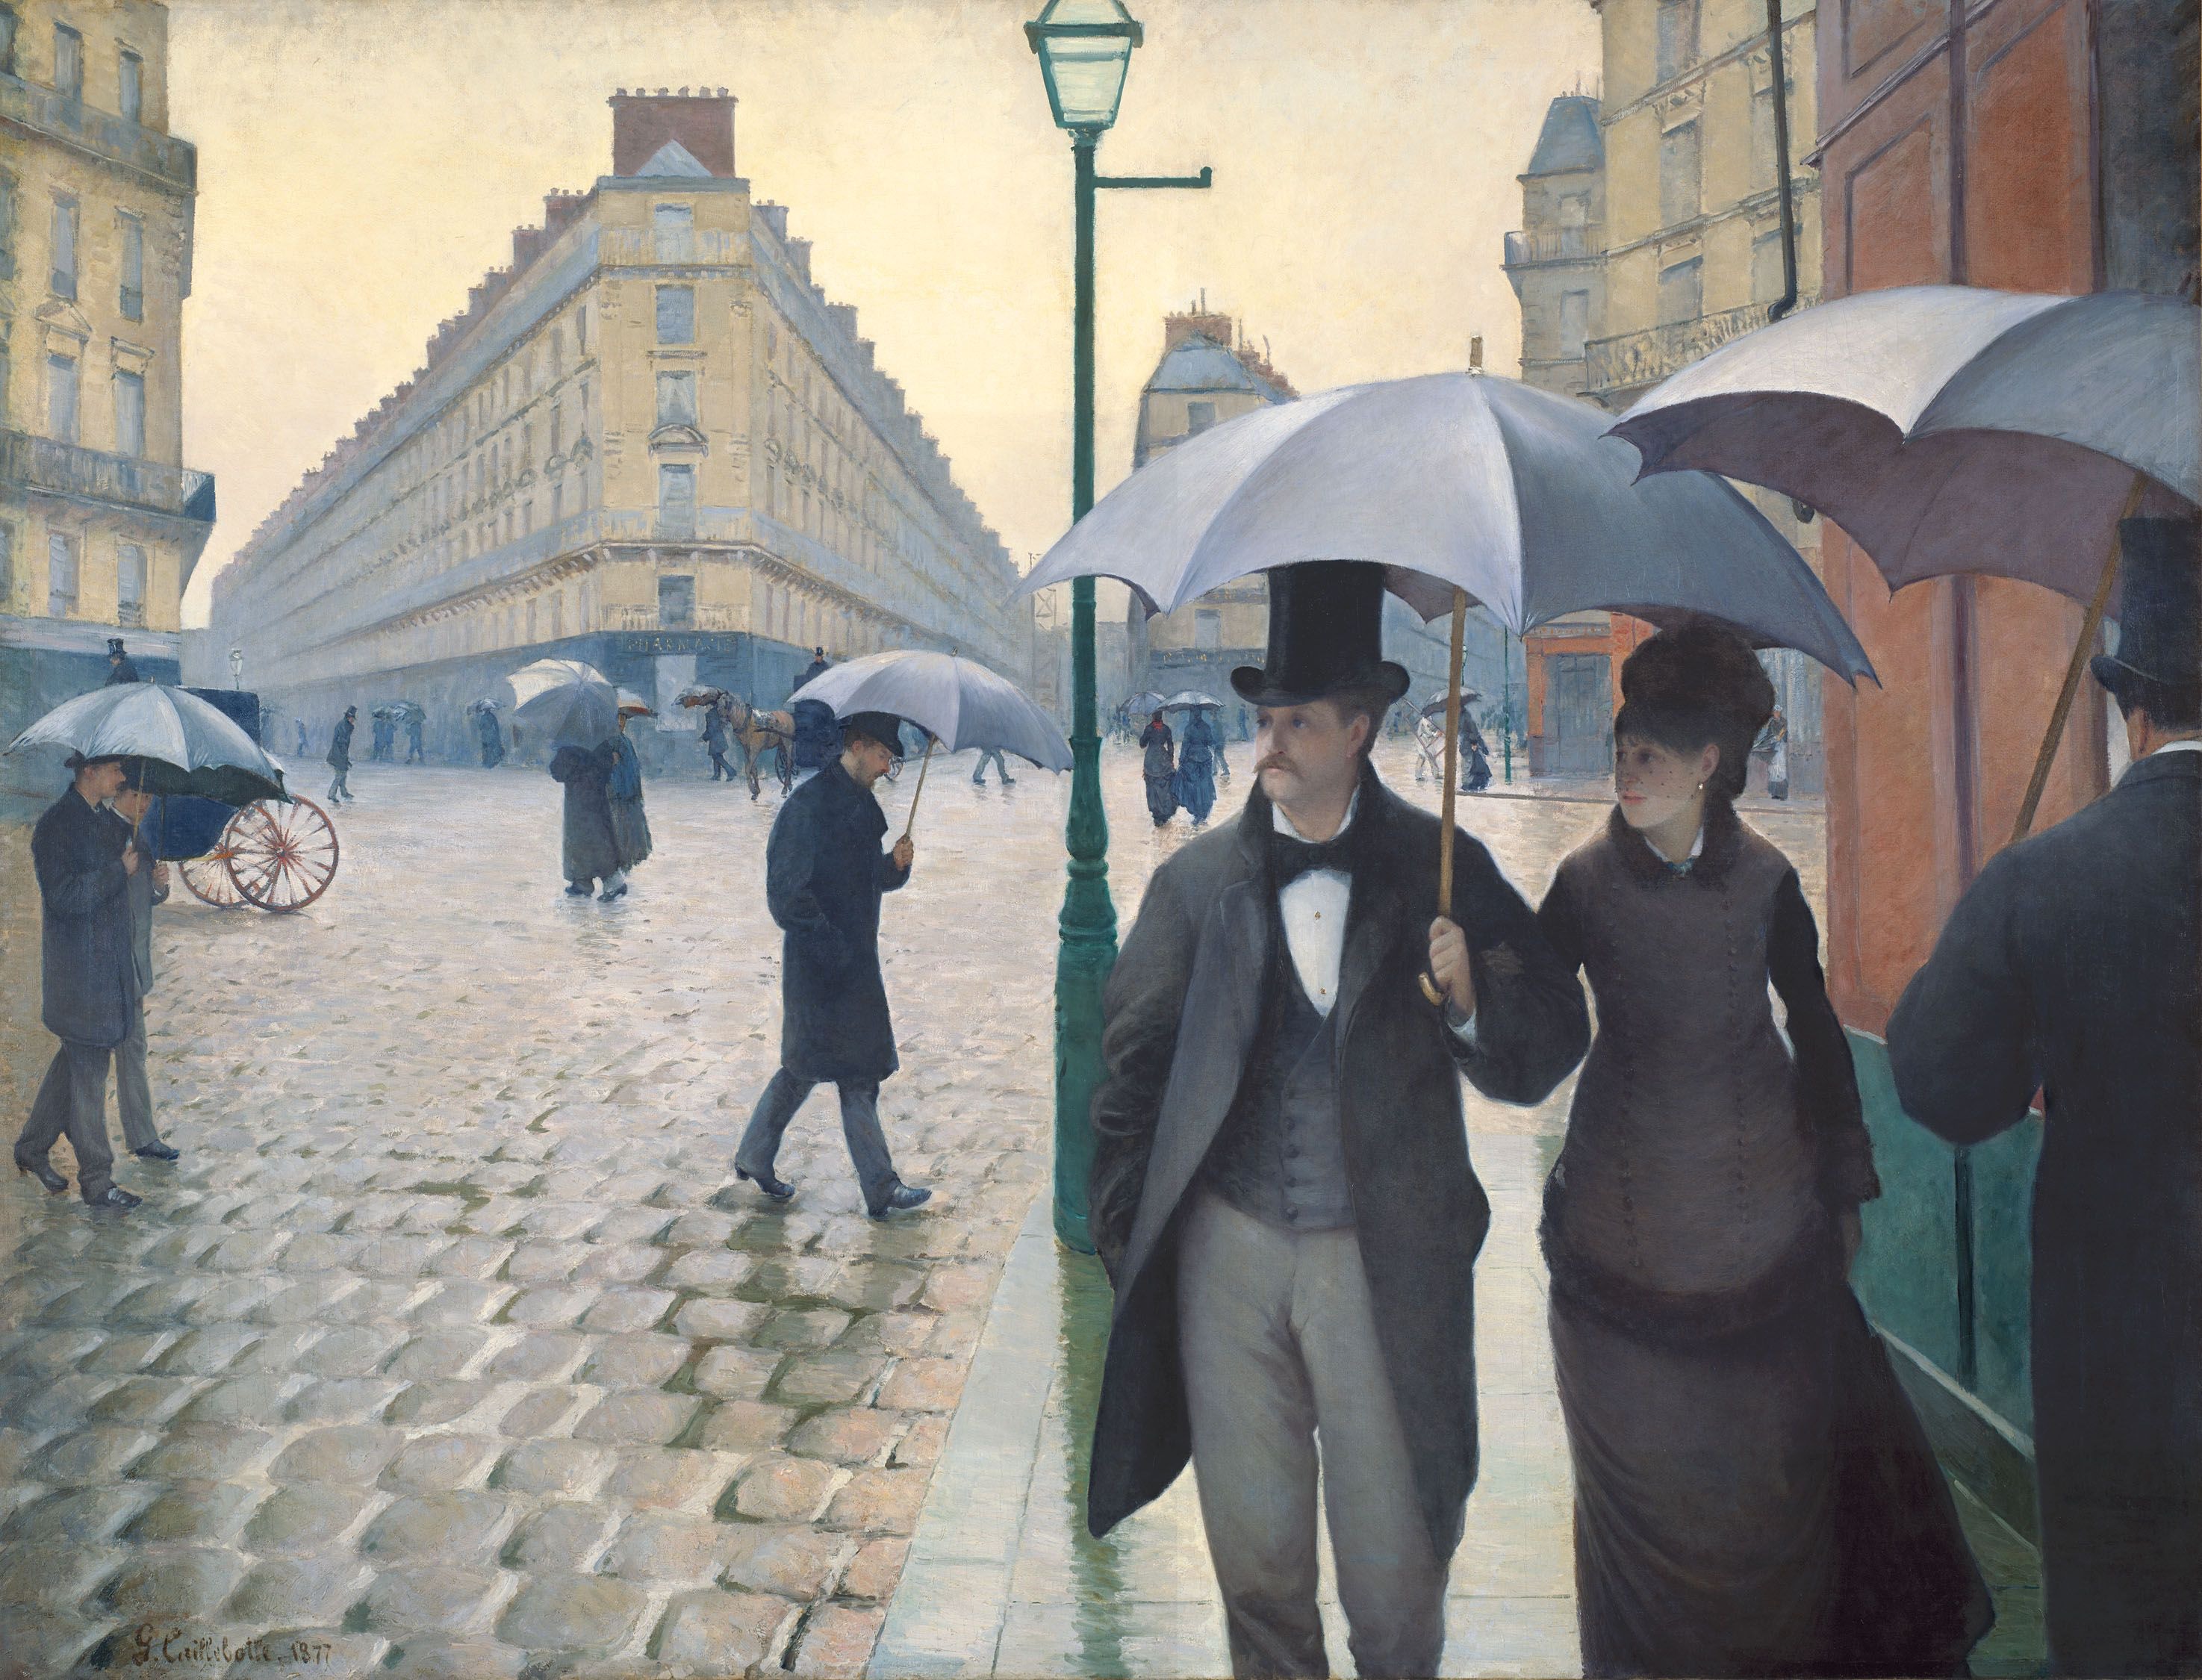 雨中的巴黎街道 by 古斯塔夫 卡勒波特 - 1877 - 83 1/2 x 108 3/4in 芝加哥藝術博物館